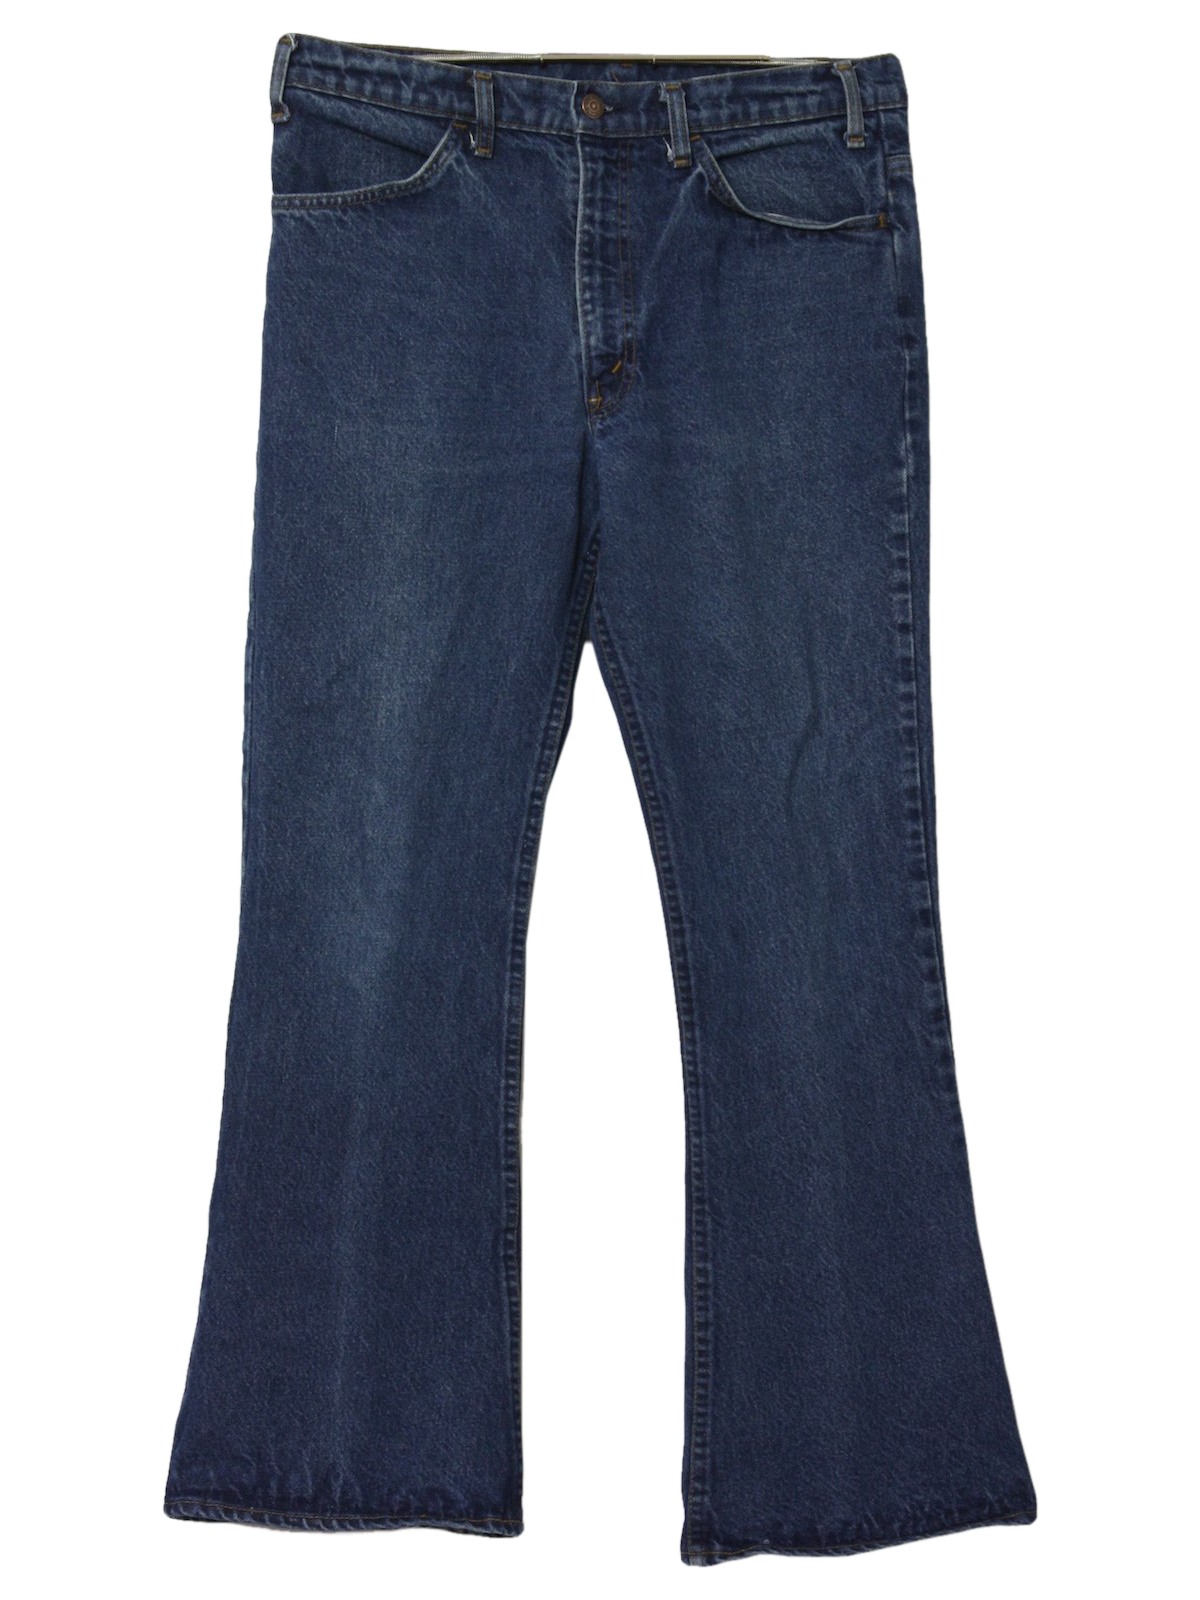 Levis 1970s Vintage Bellbottom Pants: 70s -Levis- Mens blue background ...